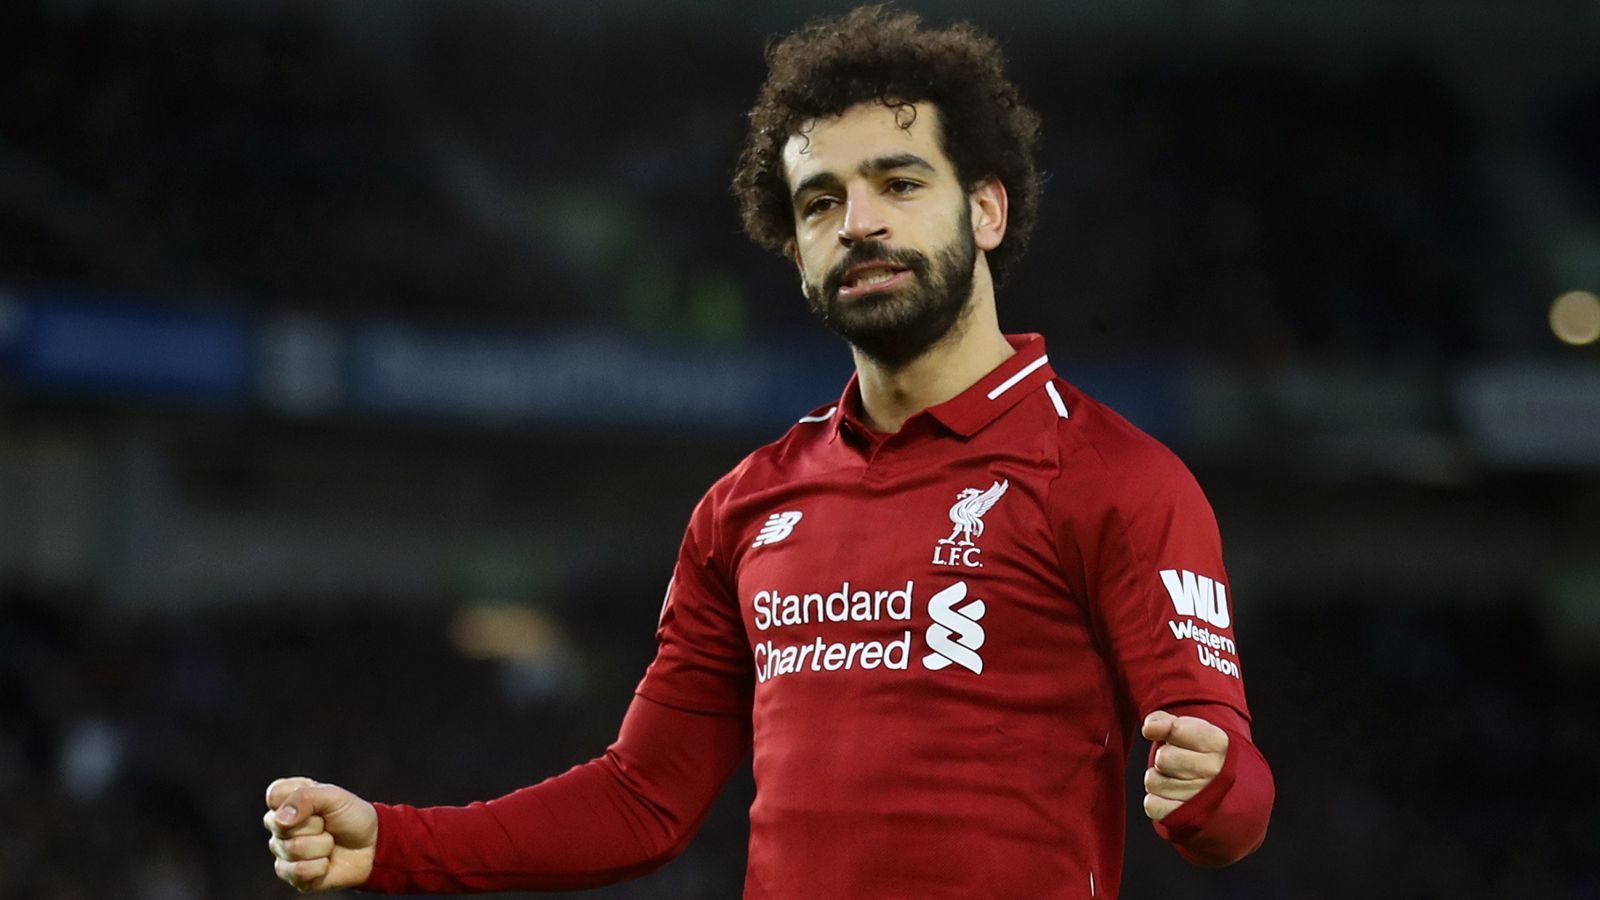 
                <strong>Platz 5 - Mohamed Salah</strong><br>
                Premier-League-Tore: 62Vereine: FC Liverpool, FC ChelseaNationalität: Ägypten
              